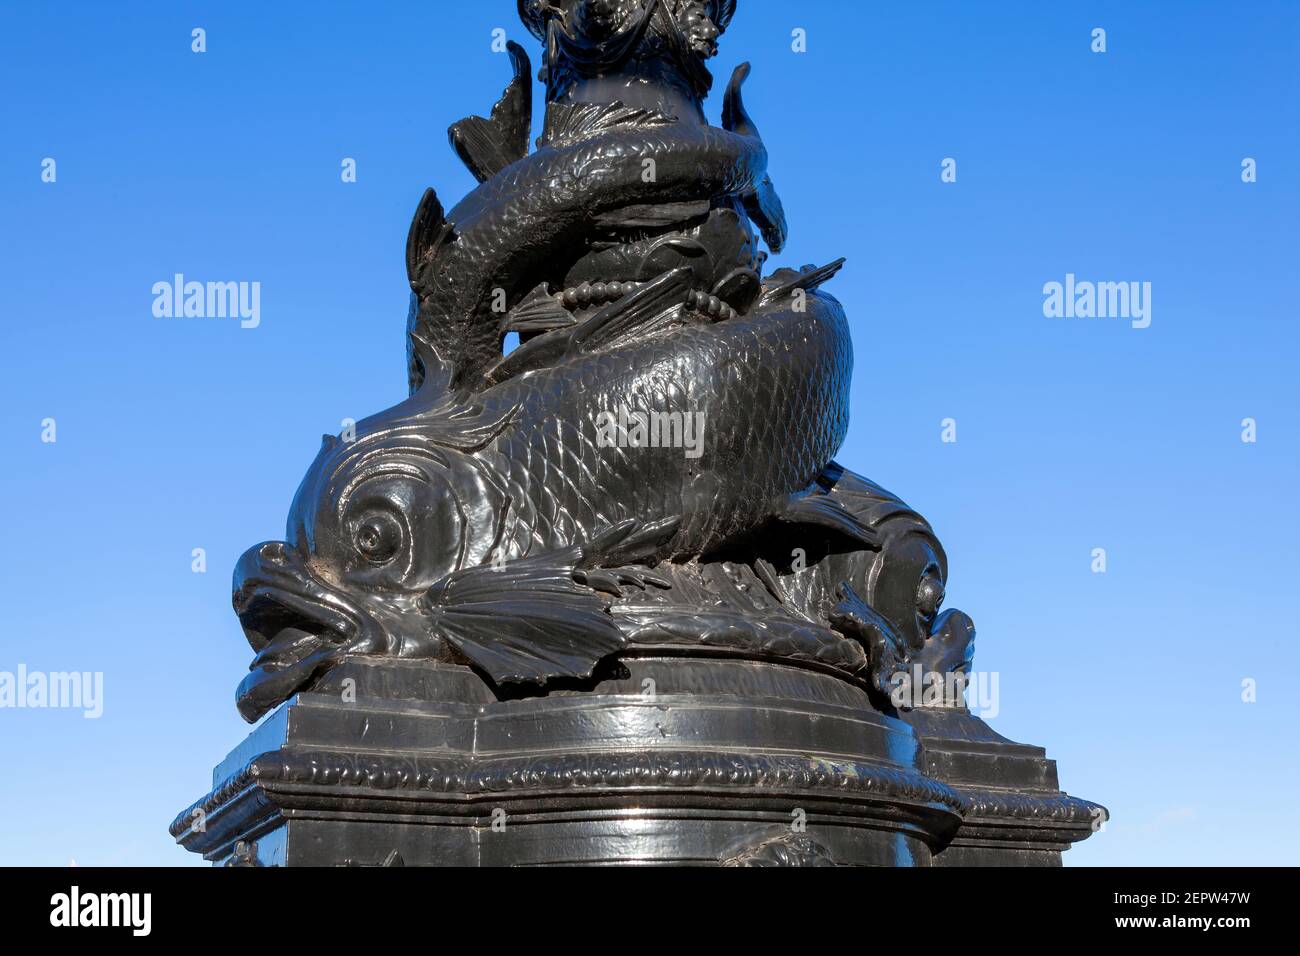 Lámpara de delfines estándar escultura estatua muebles de calle lampost en el Terraplén del río Támesis que se erigió en 1870 y son un tou popular Foto de stock